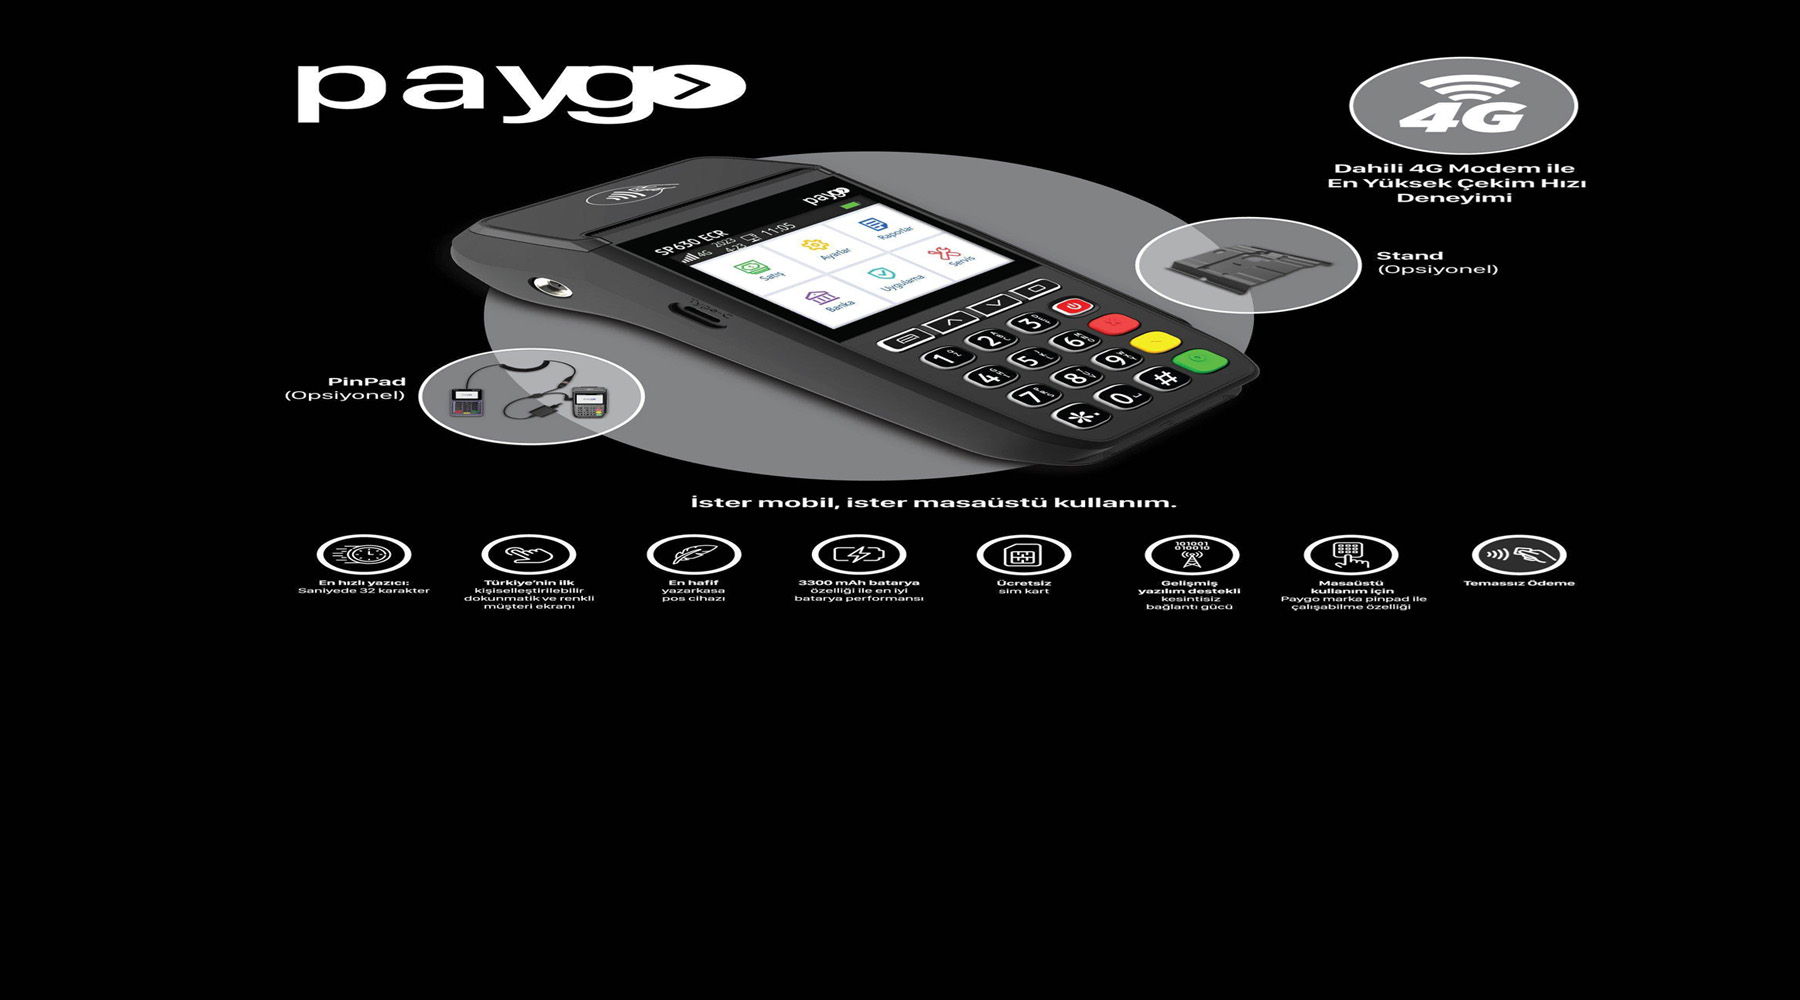 PAYGO SP630 ECR 4G